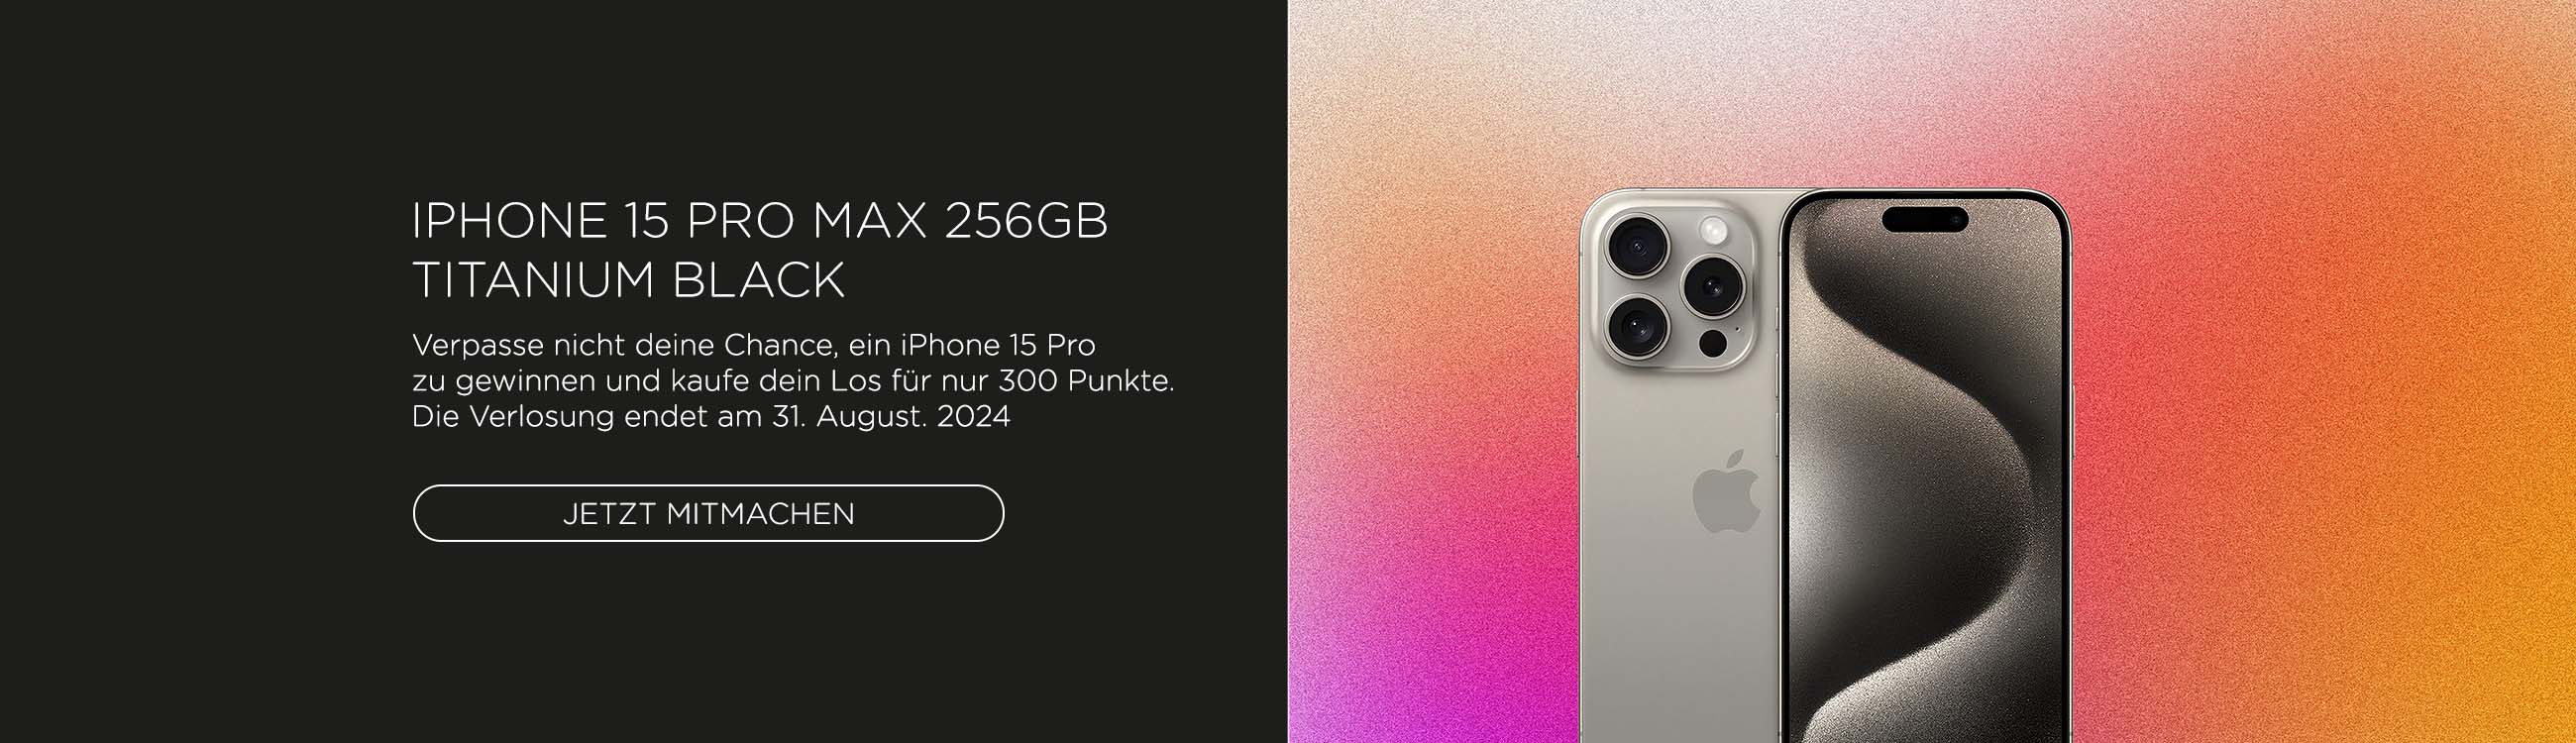 iPhone 15 Pro Max 256GB Titanium Black